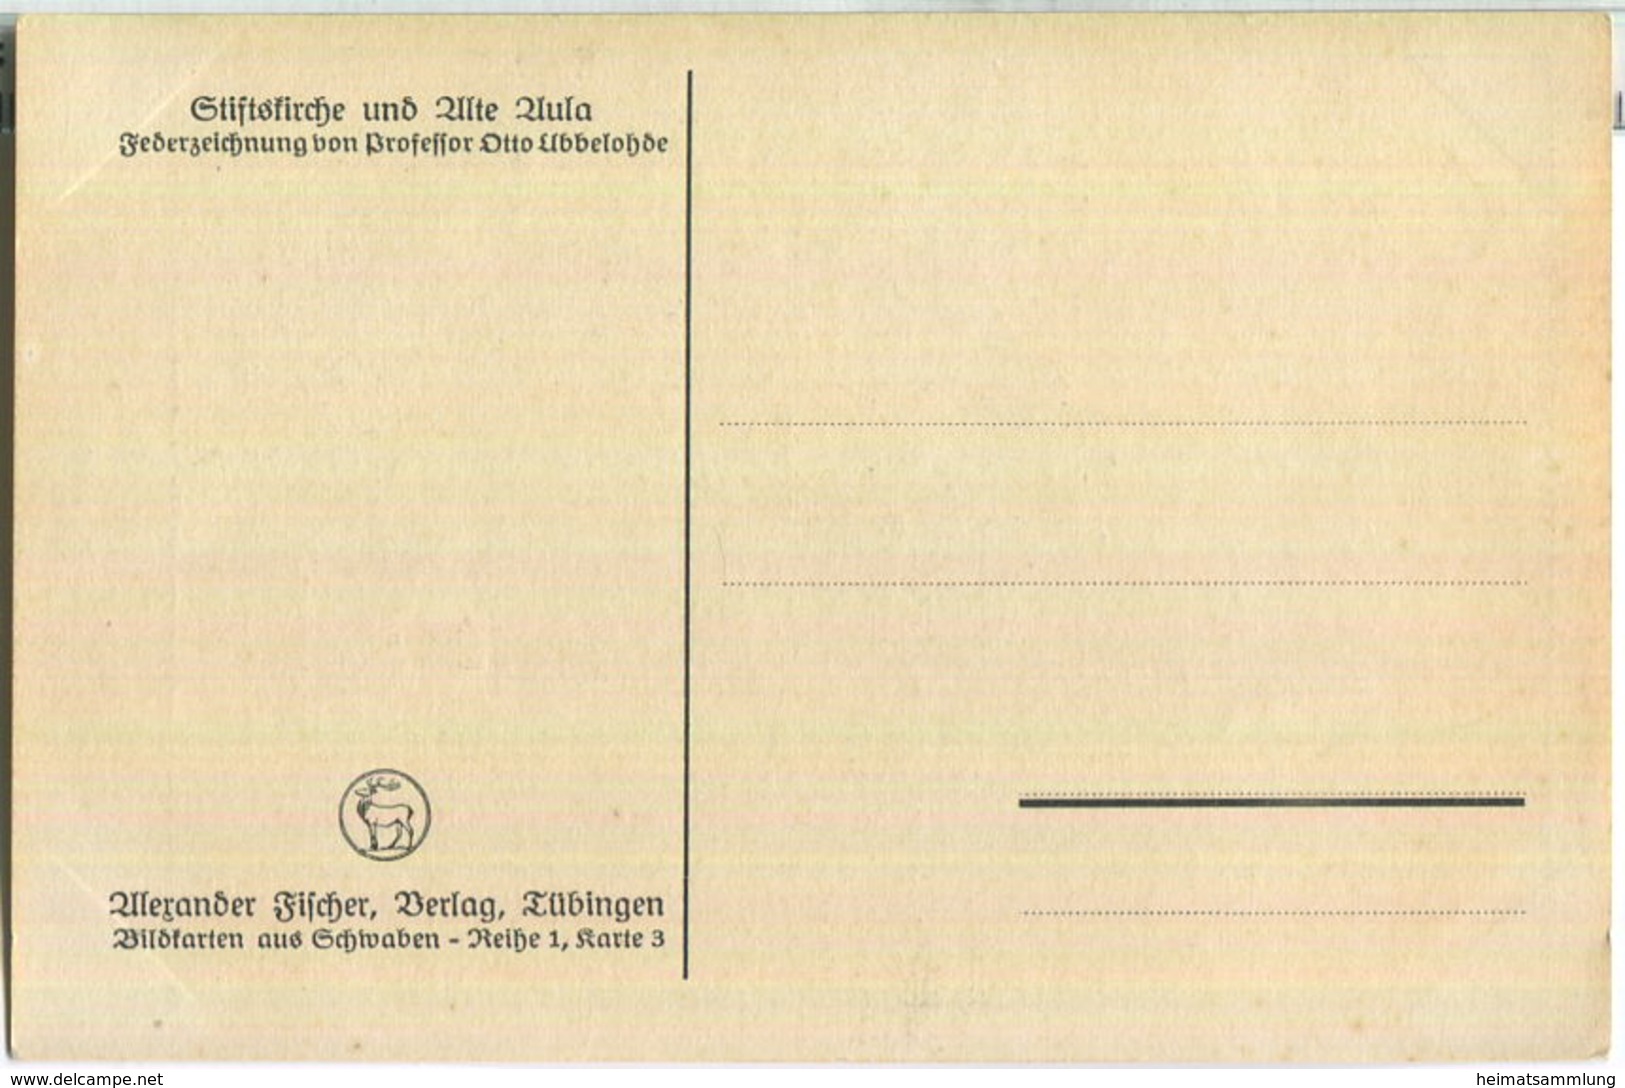 Stiftskirche Und Alte Aula - Federzeichnung - Künstlerkarte Signiert Otto Ubbelohde - Verlag Alexander Fischer Tübingen - Ubbelohde, Otto